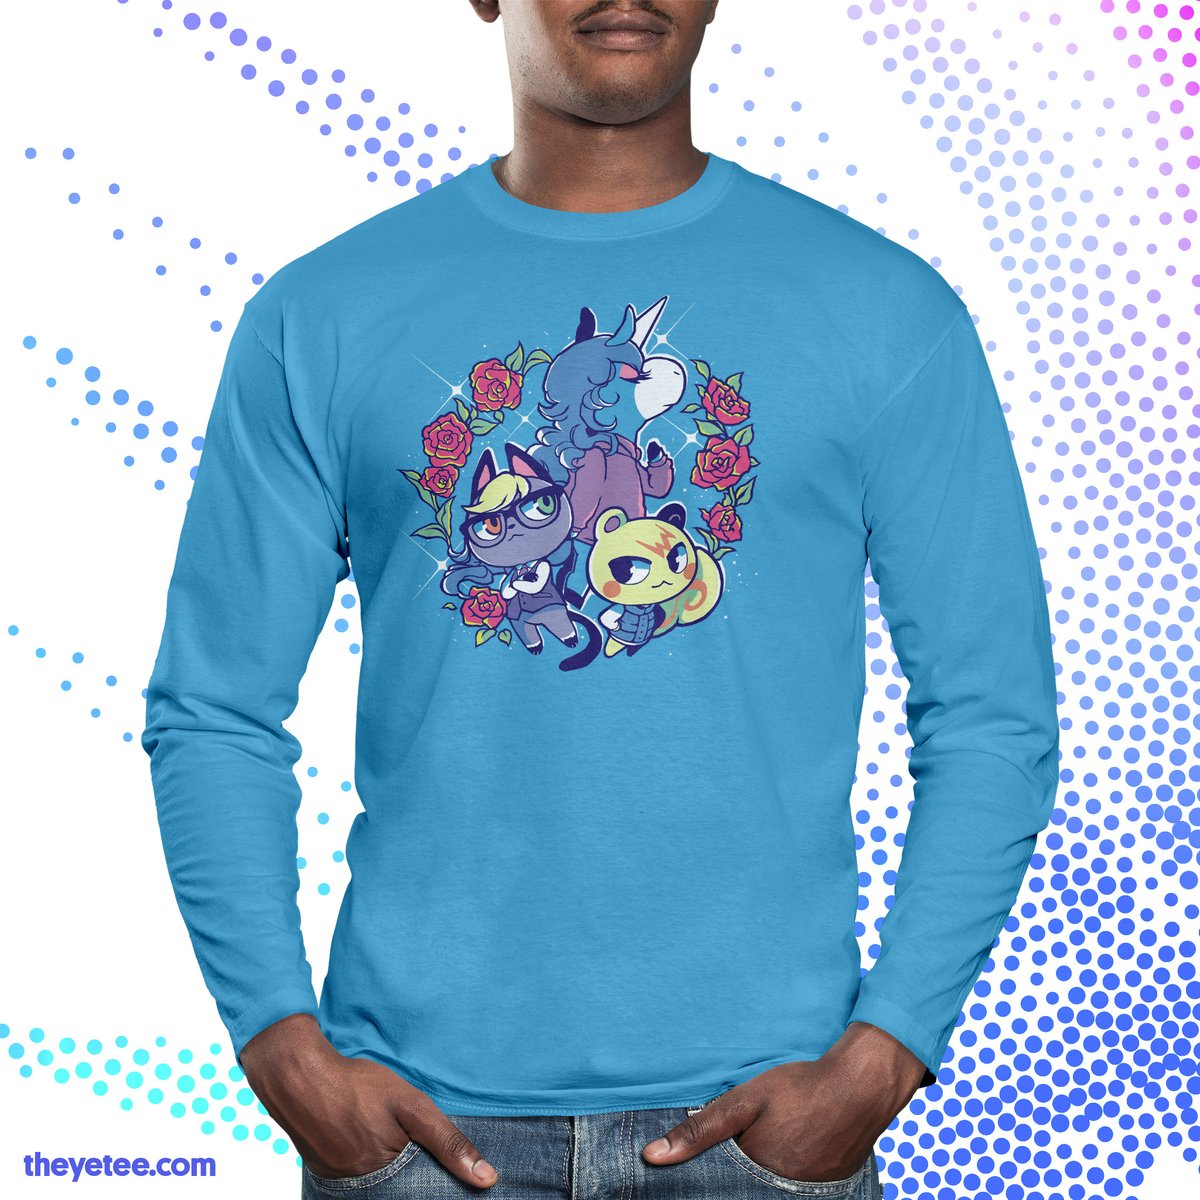 male focus shirt 1boy flower heterochromia animal ears blue shirt  illustration images